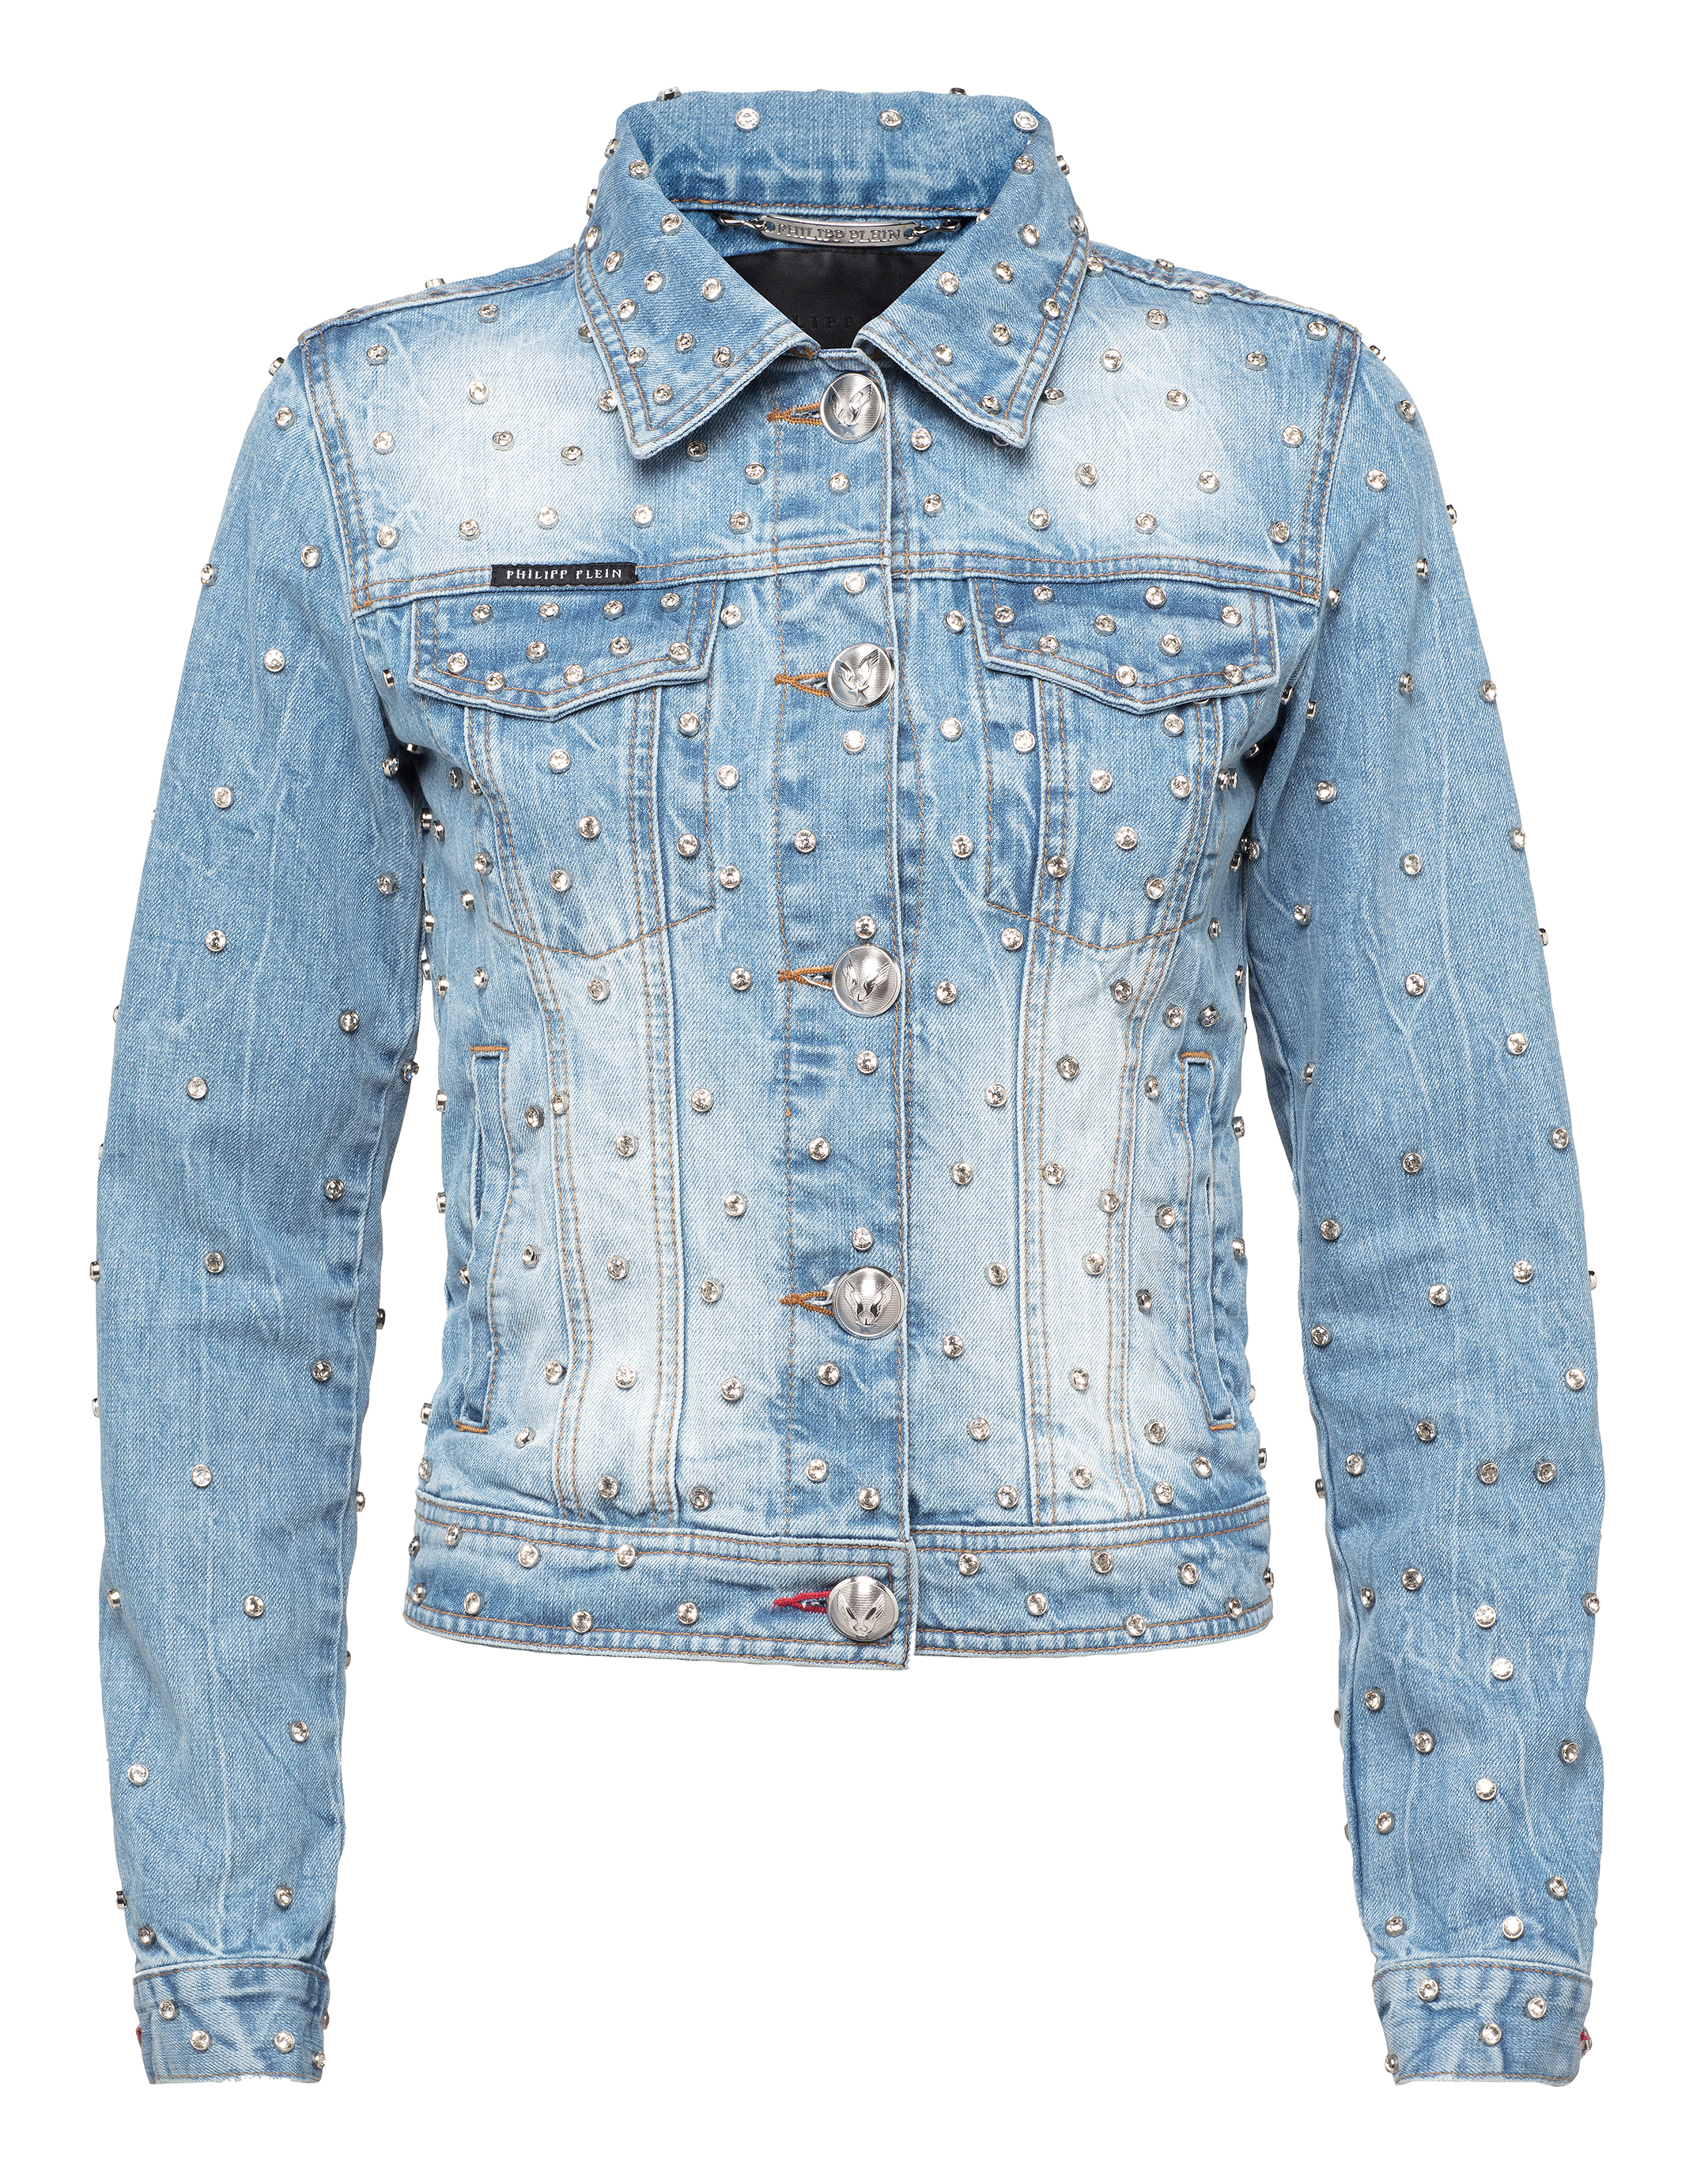 philipp plein jean jacket